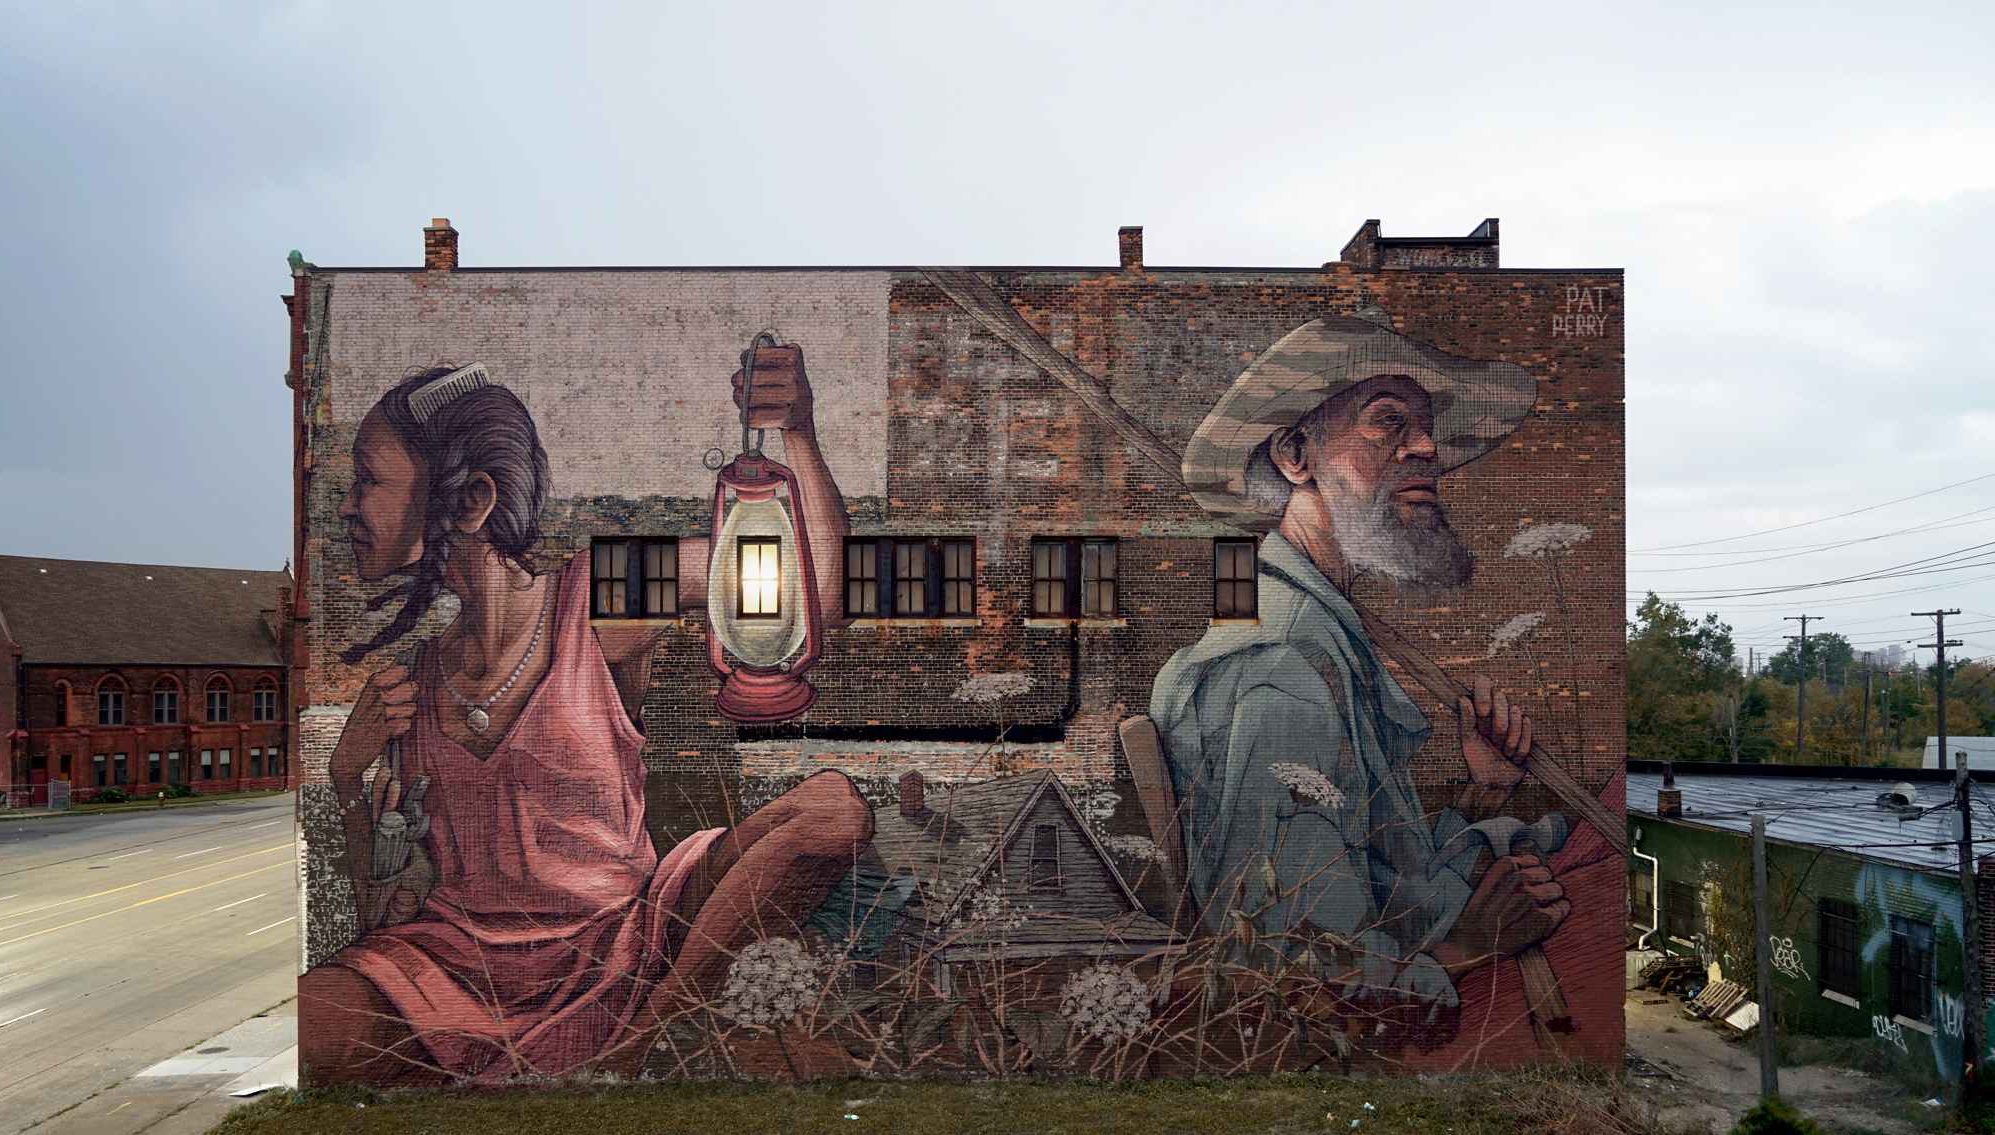 Pat Perry mural in Detroit